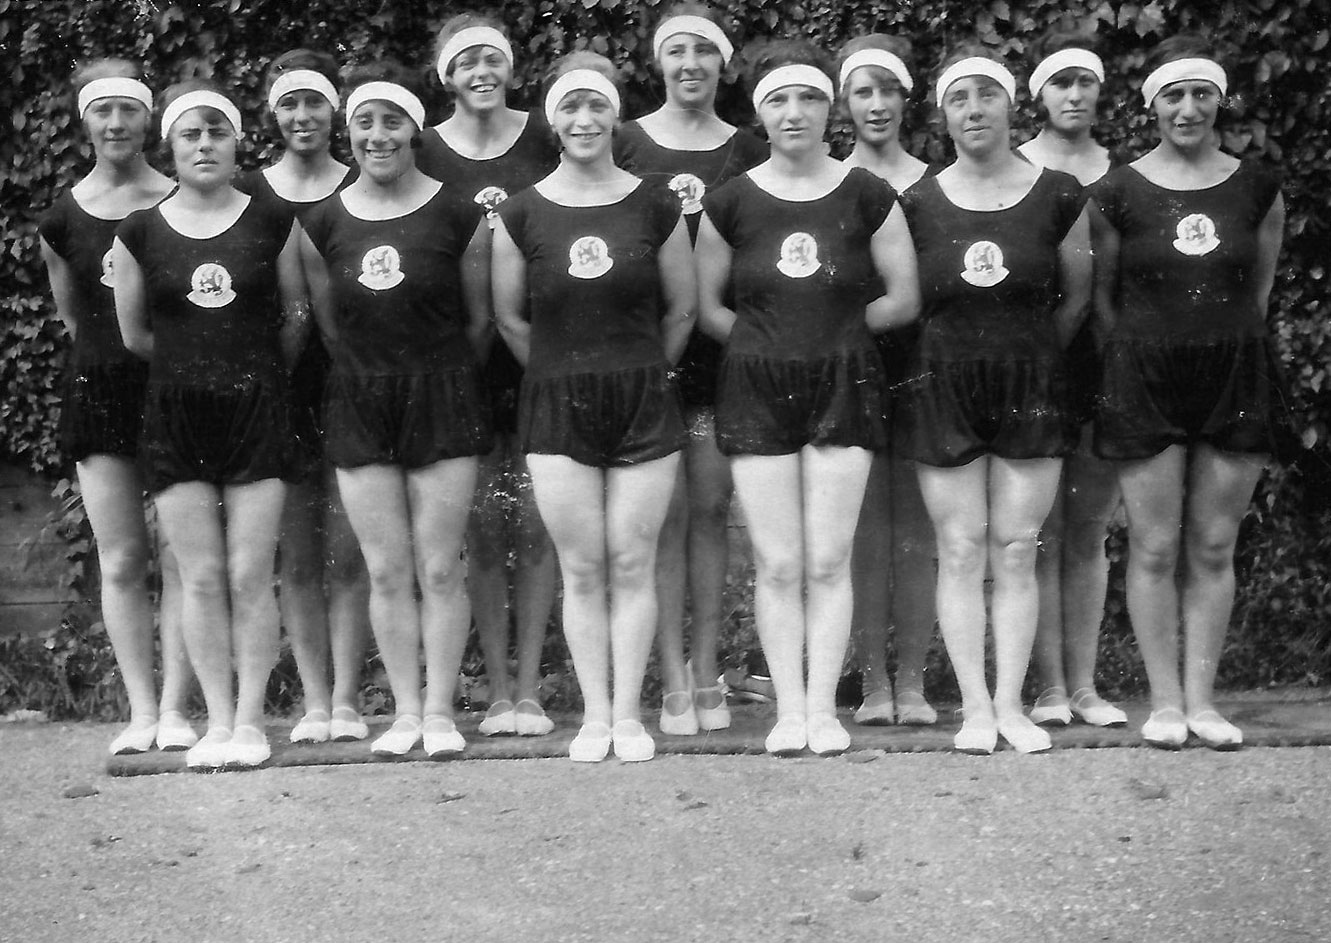 El Equipo Olímpico femenino holandés de gimnasia en los Juegos Olímpicos de Ámsterdam, 1928. El equipo ganó la Medalla de Oro. El entrenador era judío, al igual que cinco de las miembros del equipo